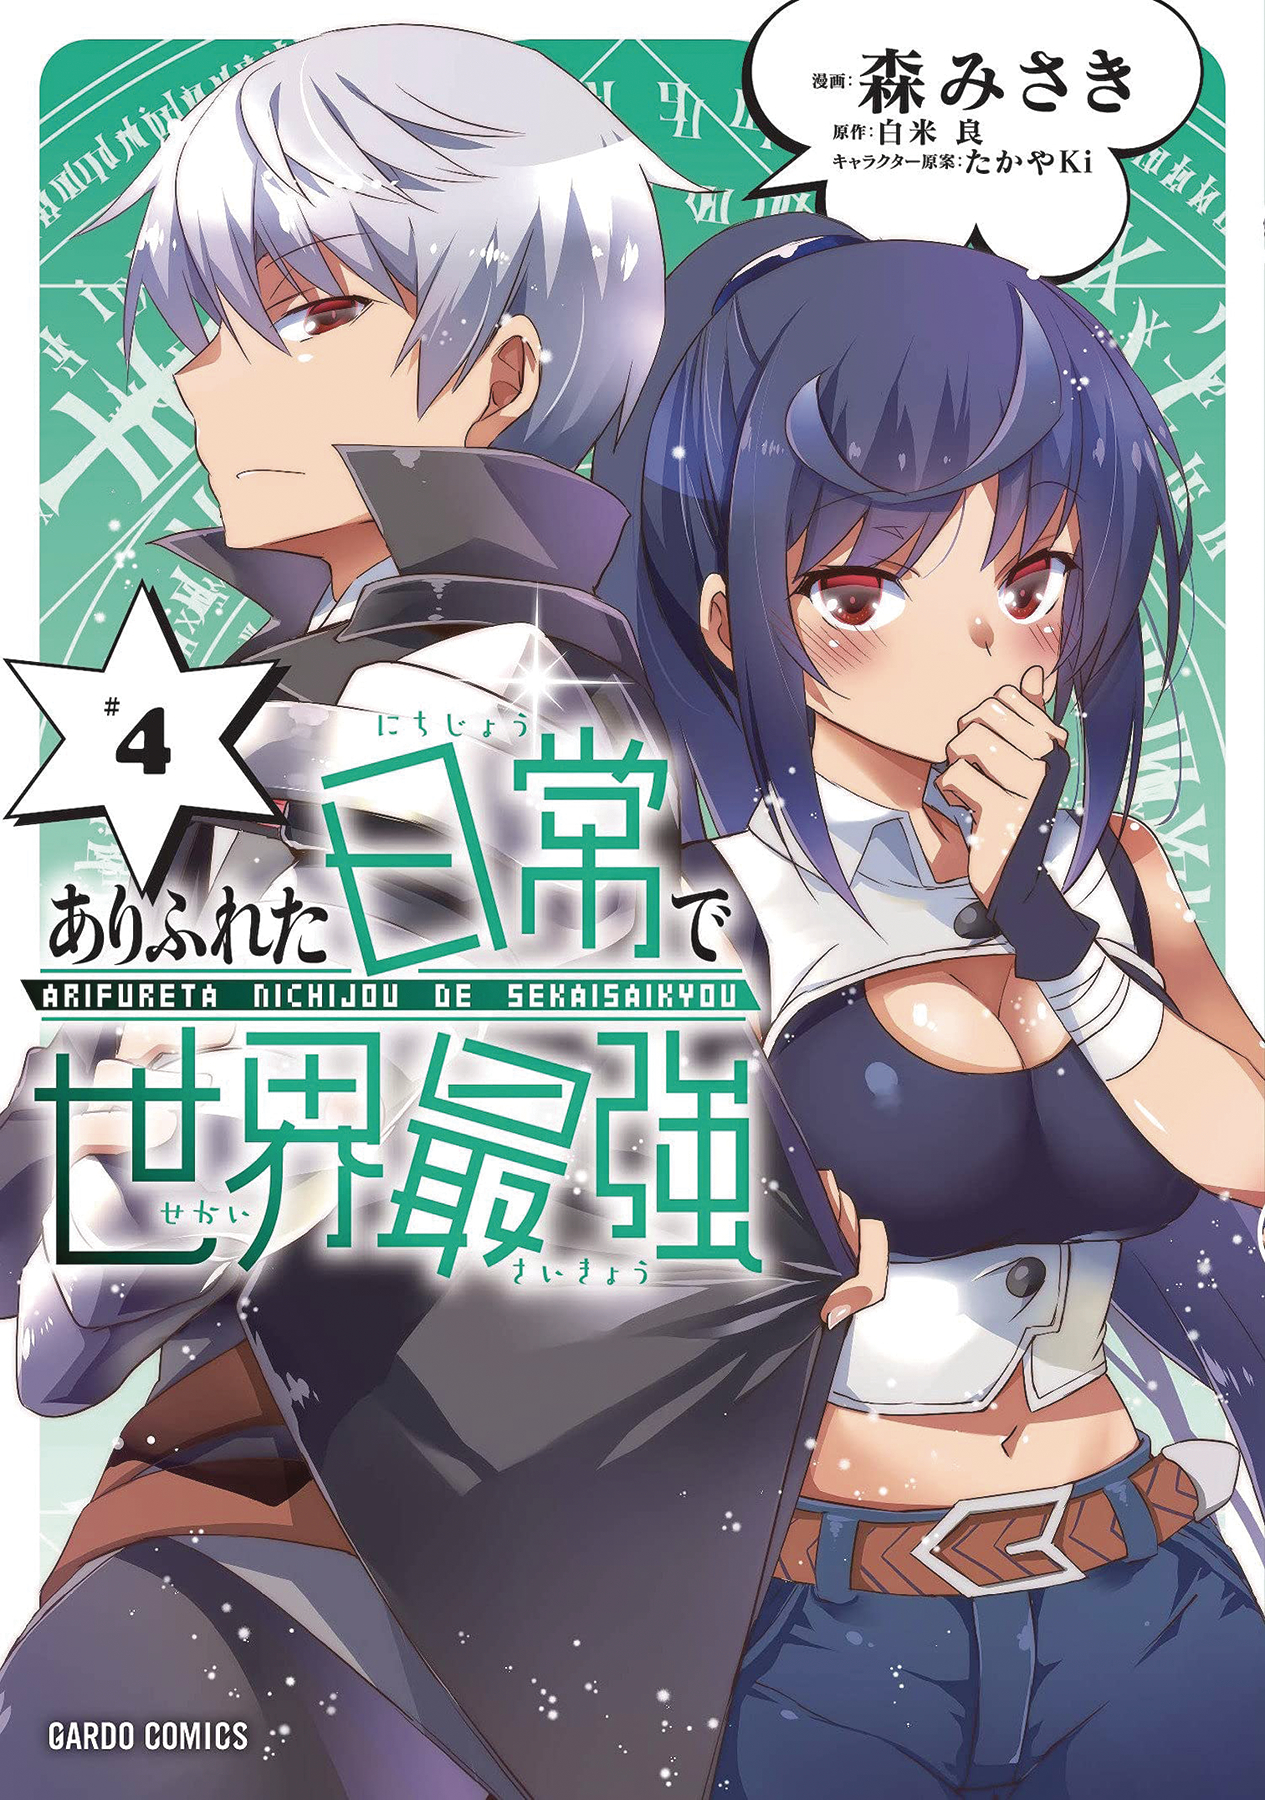 Arifureta I Heart Isekai Manga Volume 4